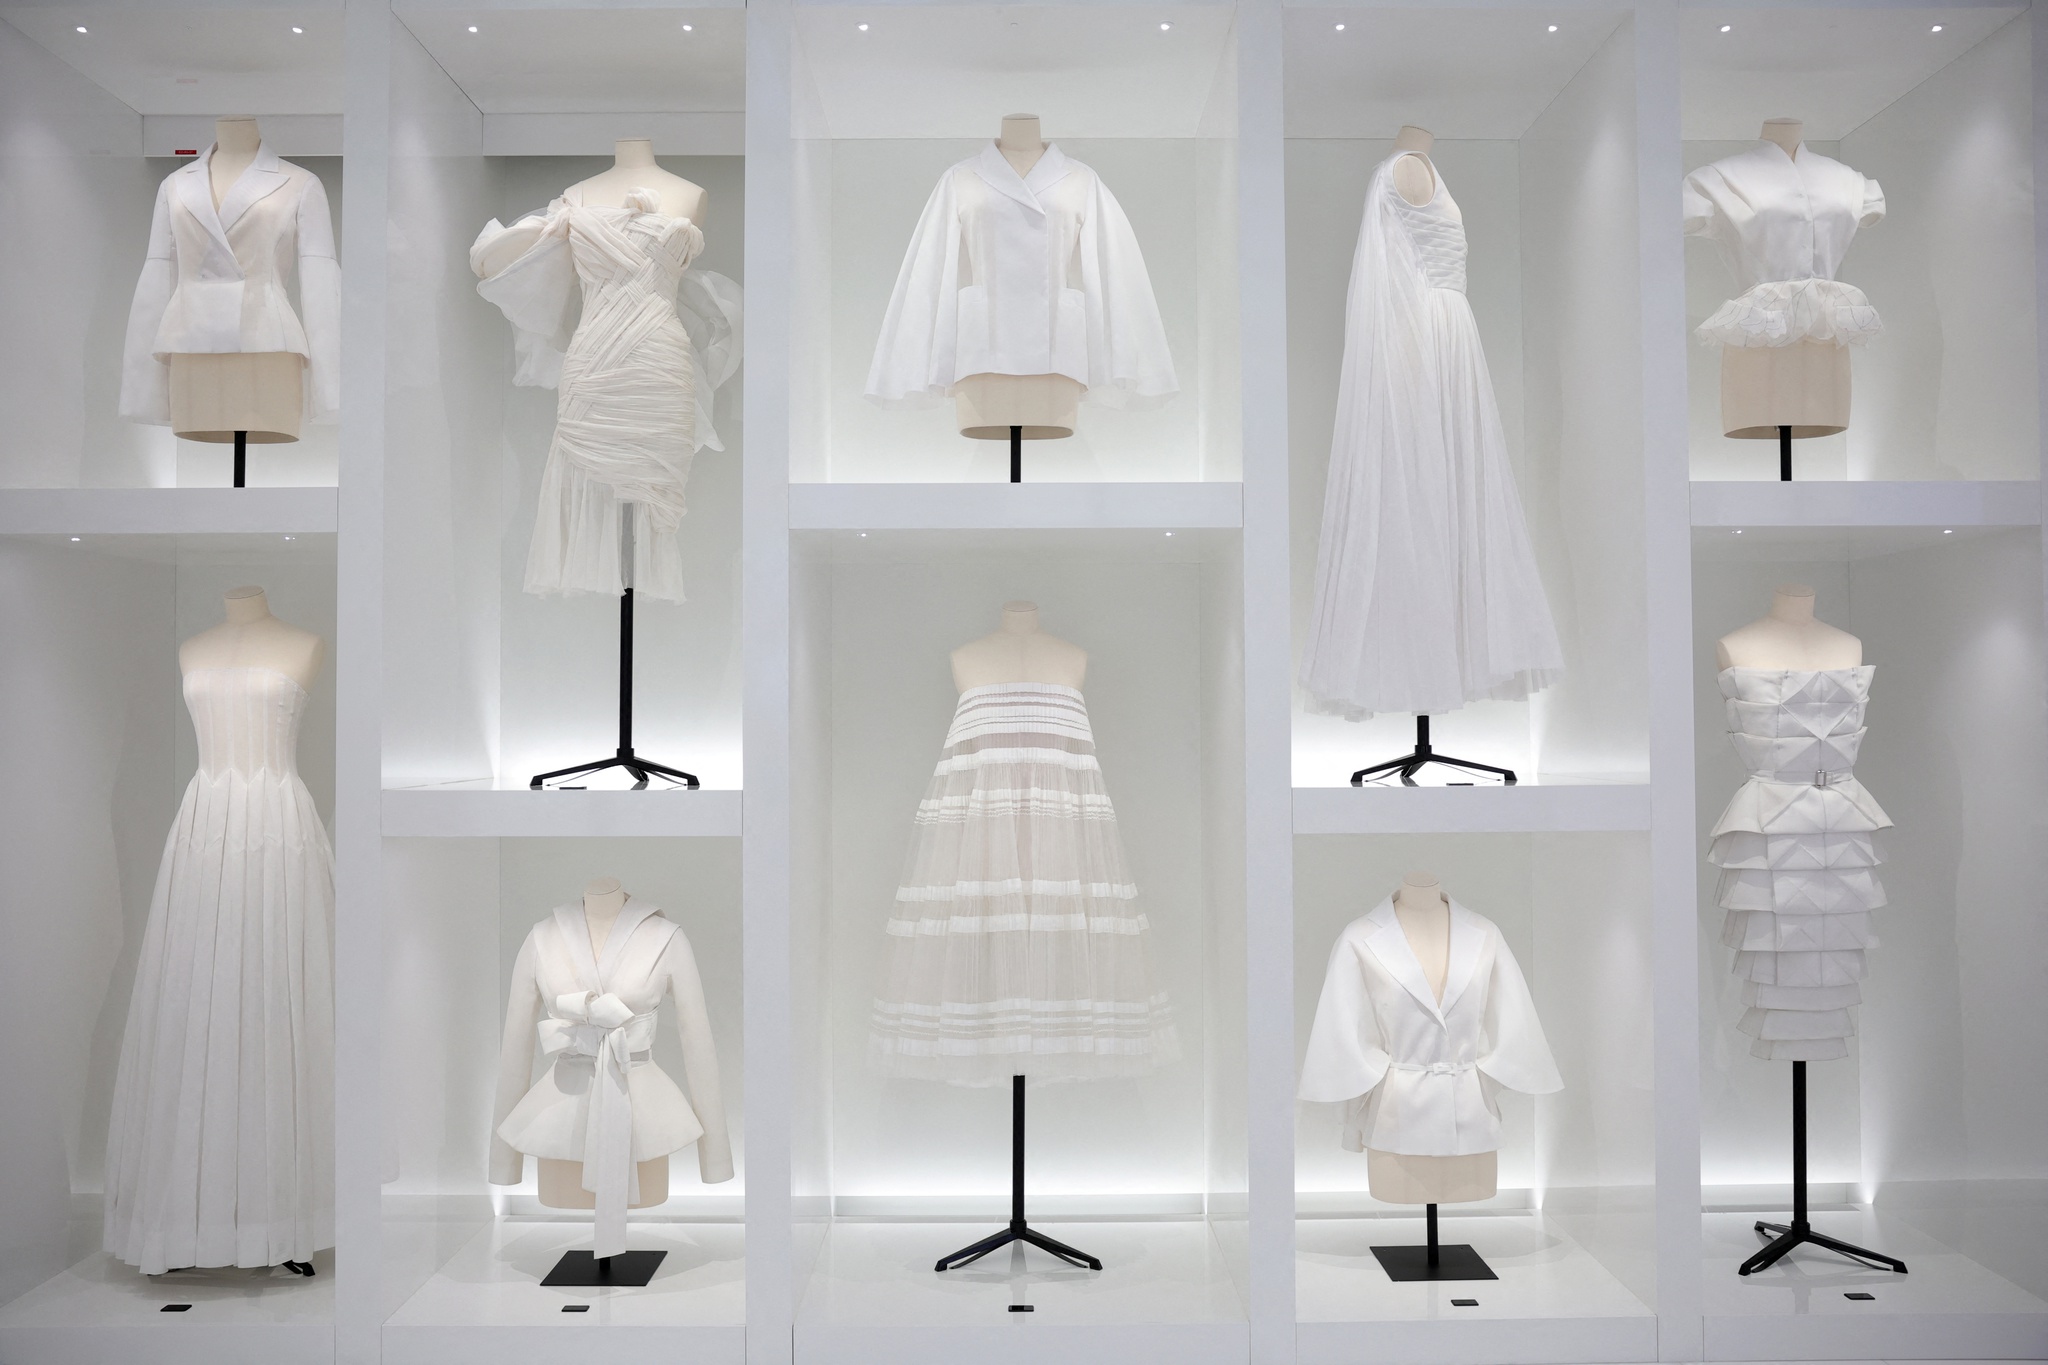 Dior reabre loja histórica e museu no coração de Paris